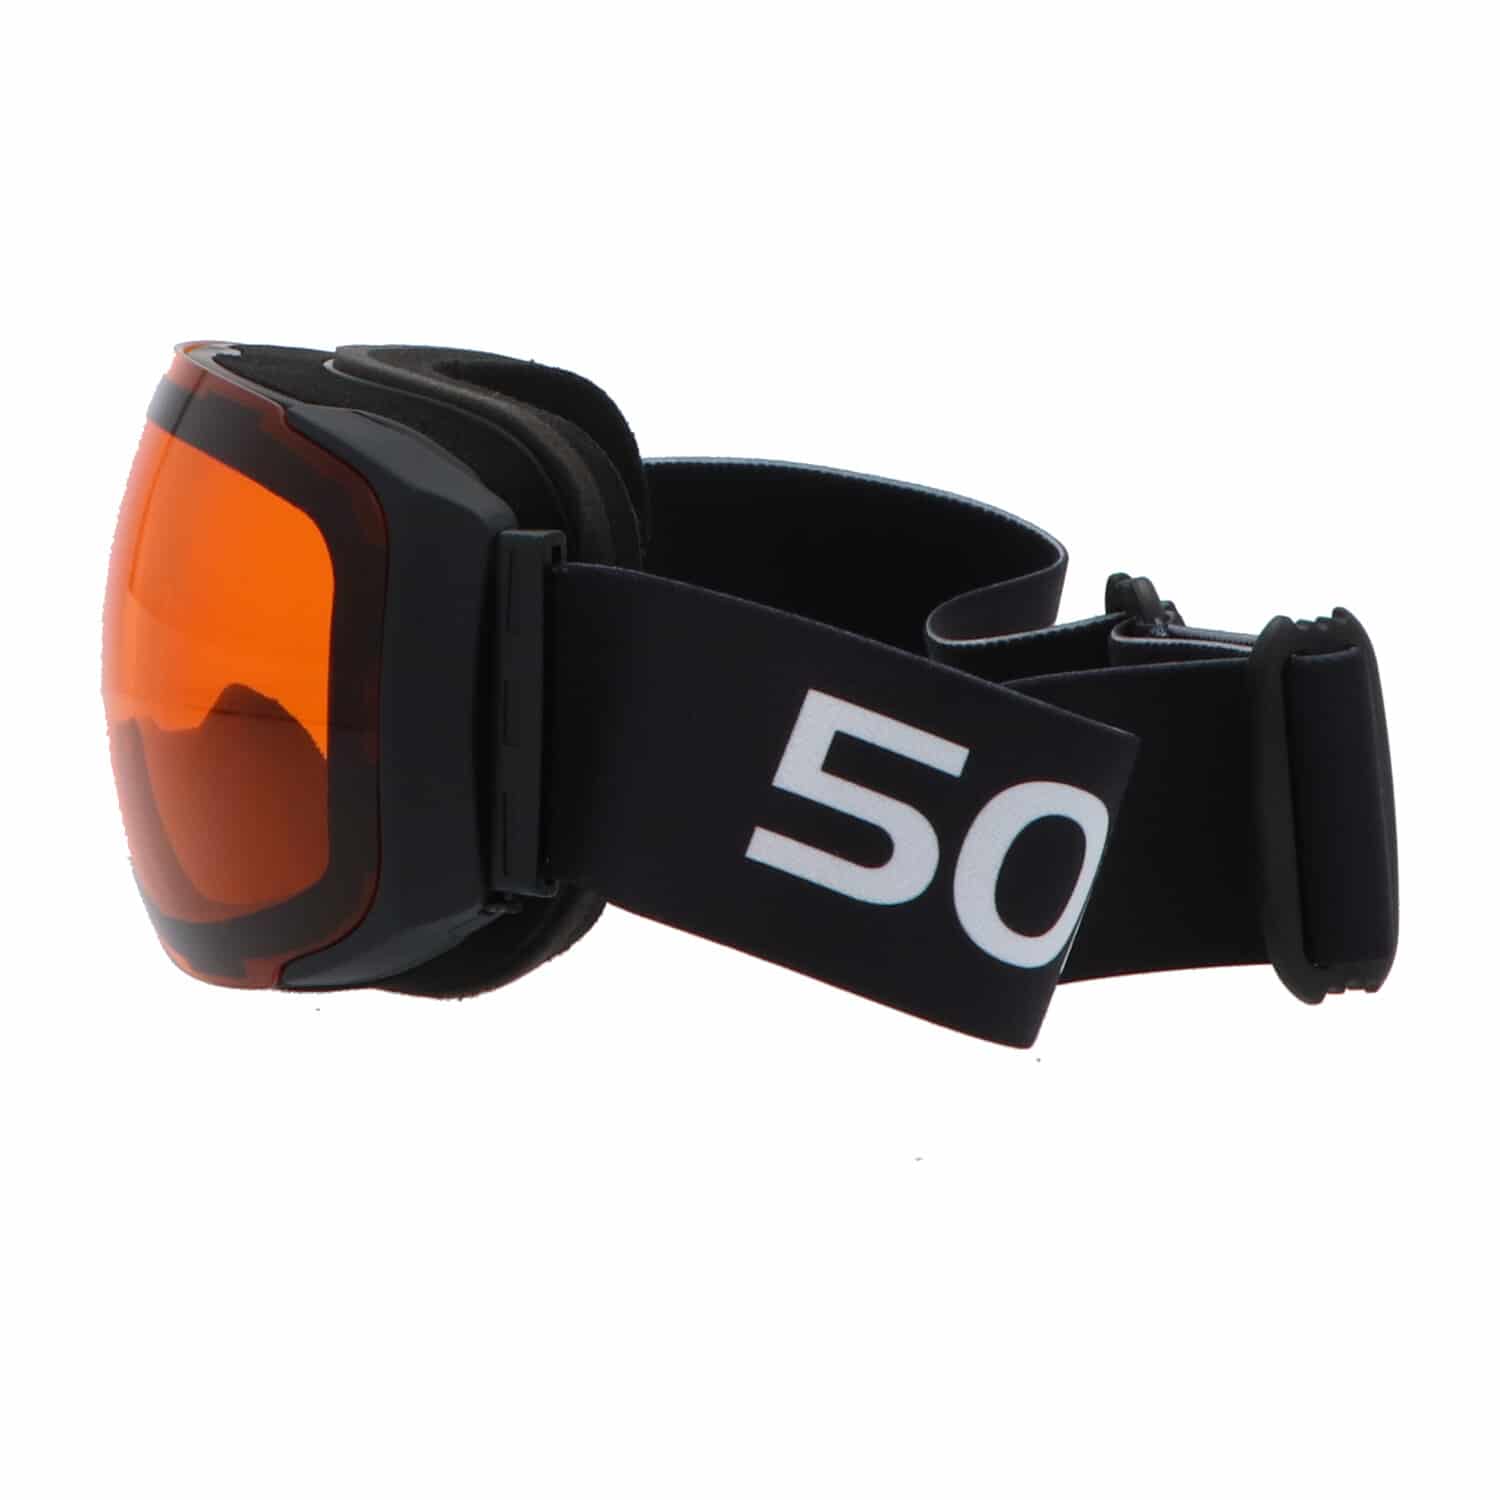 5one® Alpine 9 - Skibril met 2 Verwisselbare Lenzen - Blauw en Oranje